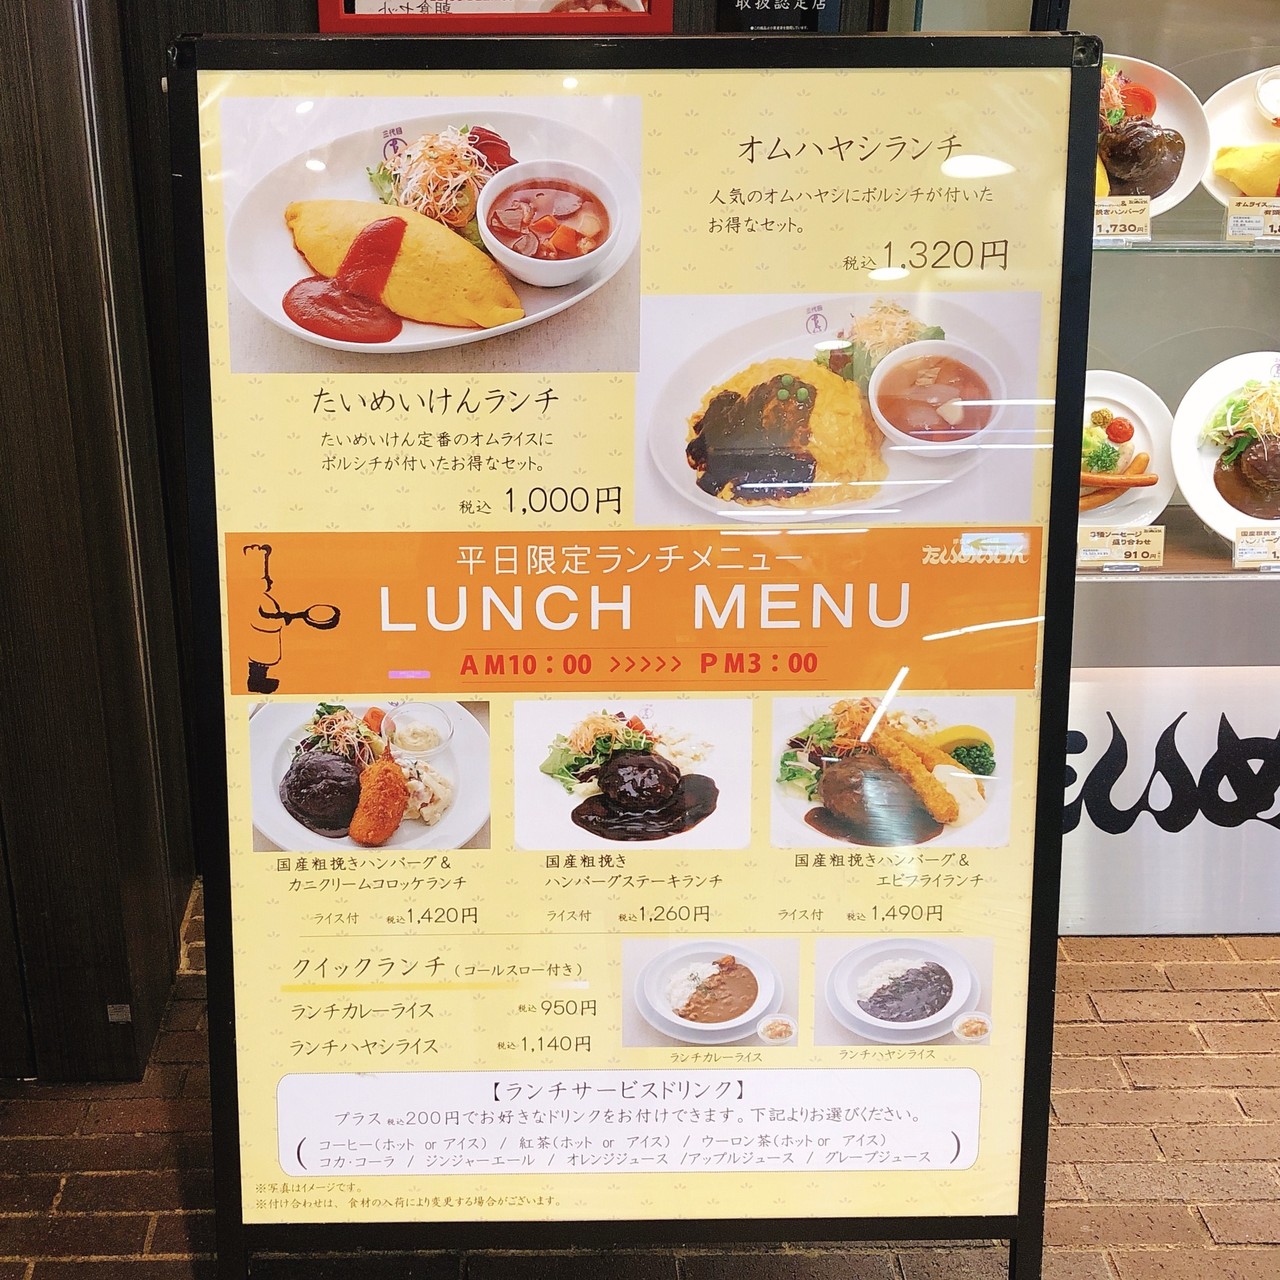 たいめいけん 上野駅の改札内で食べる老舗のオムライス みずほ Note